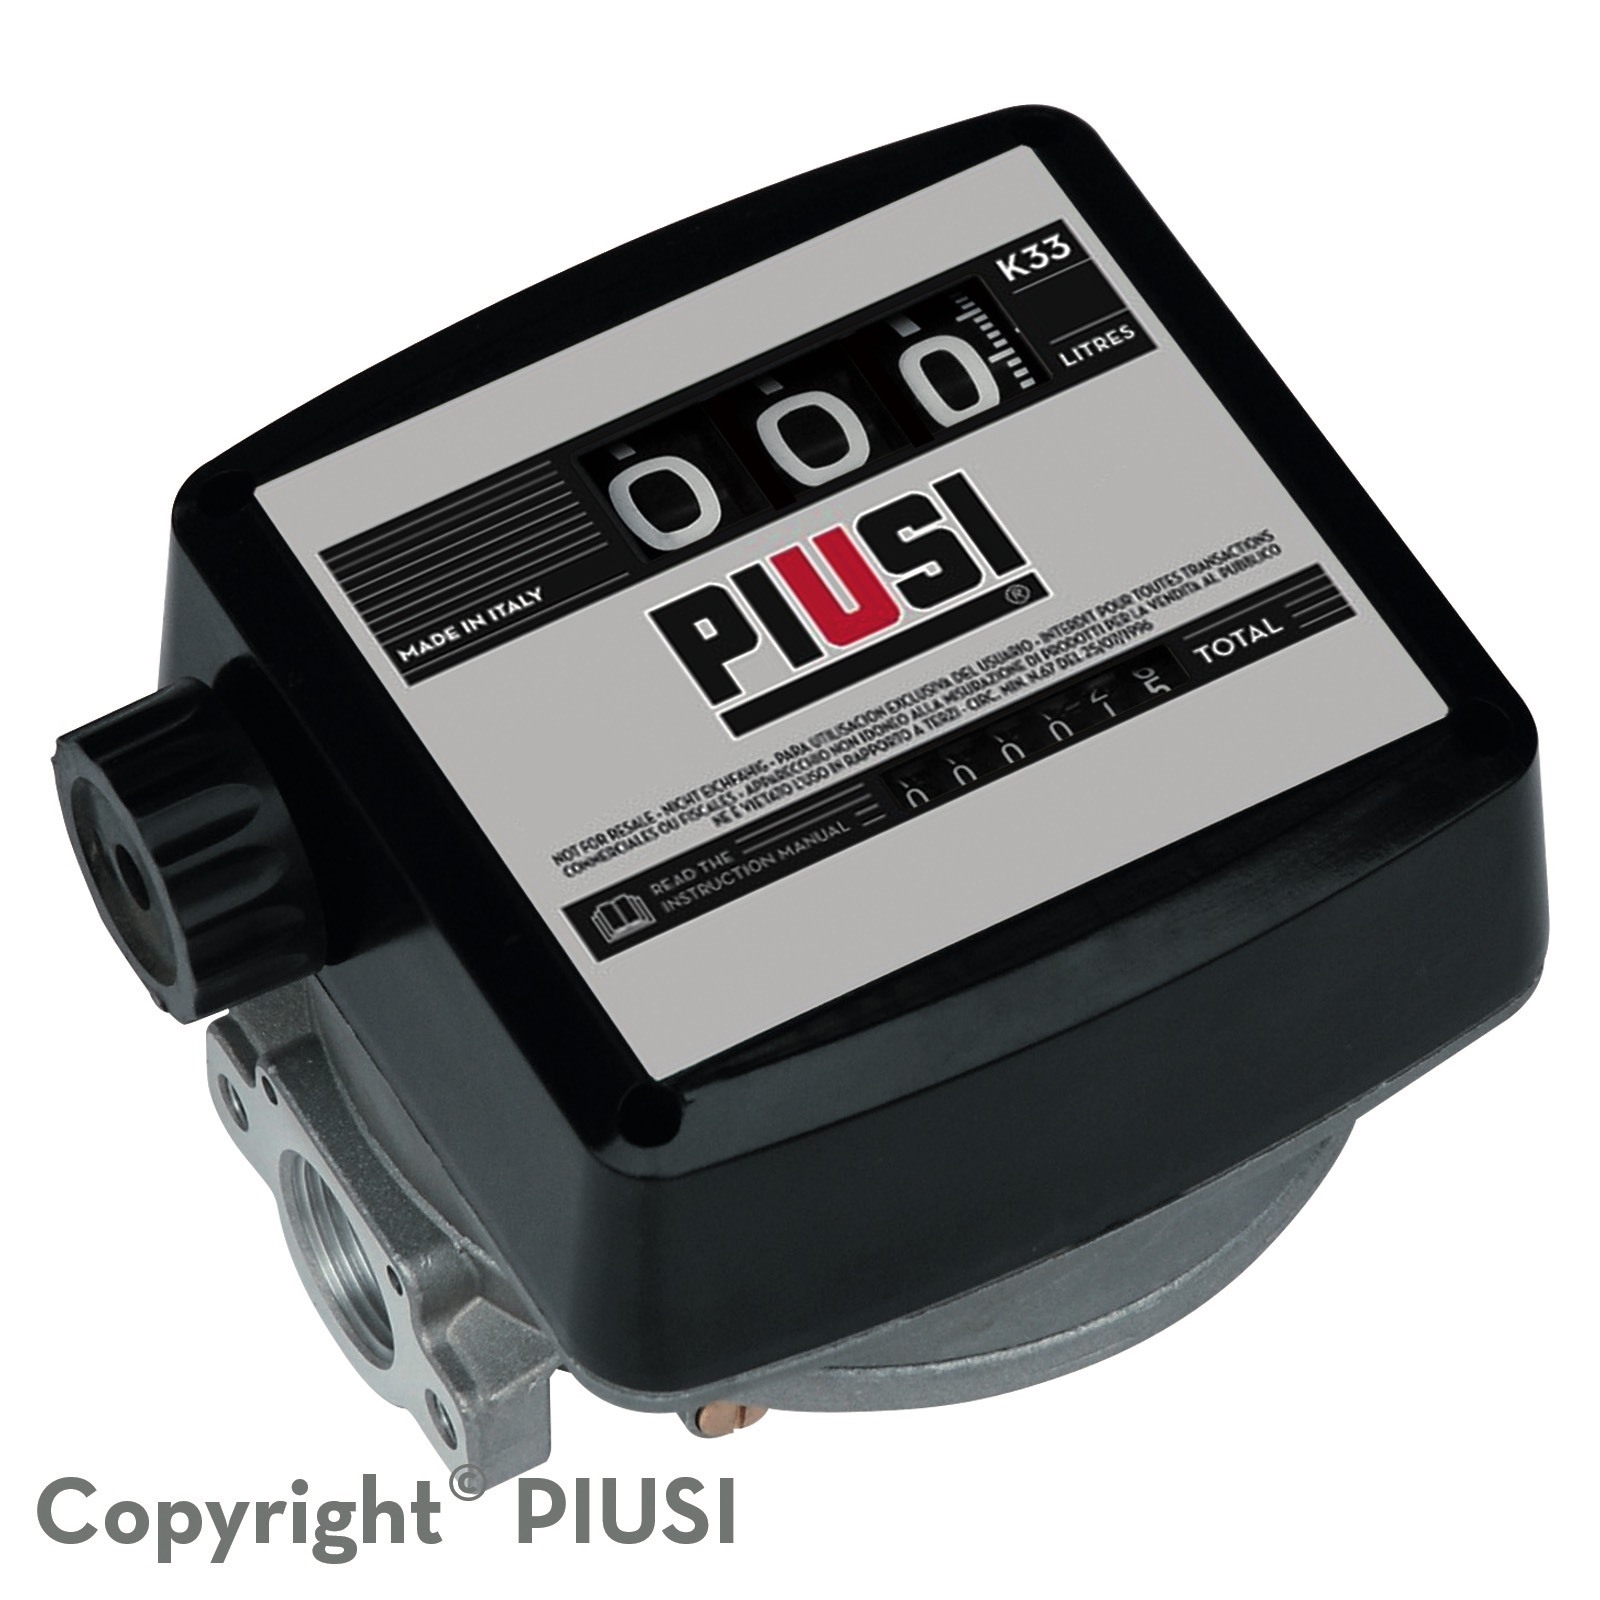 Đồng hồ đo lưu lượng dầu Piusi K33